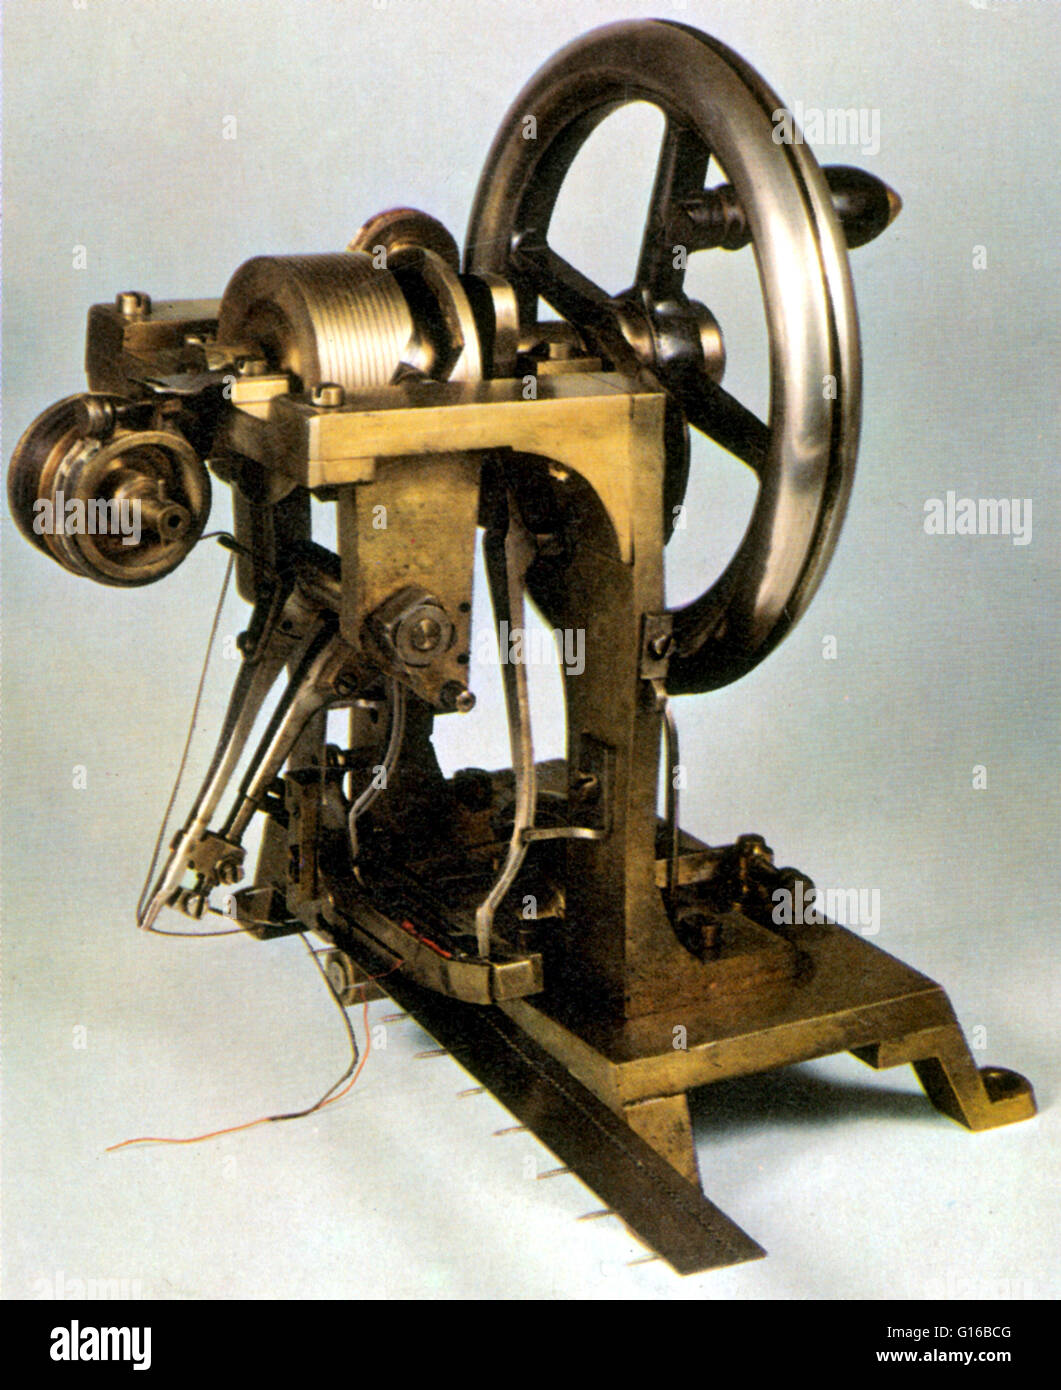 Howe's 1845 macchina utilizzata lock-stitch. La navetta caricato con filo rosso è al fondo, appena sopra i denti della piastra baster che ha tenuto il tessuto come è fatto passare attraverso la macchina. Elias Howe, Jr. (Luglio 9, 1819 - 3 ottobre 1867) era un inventore americano Foto Stock